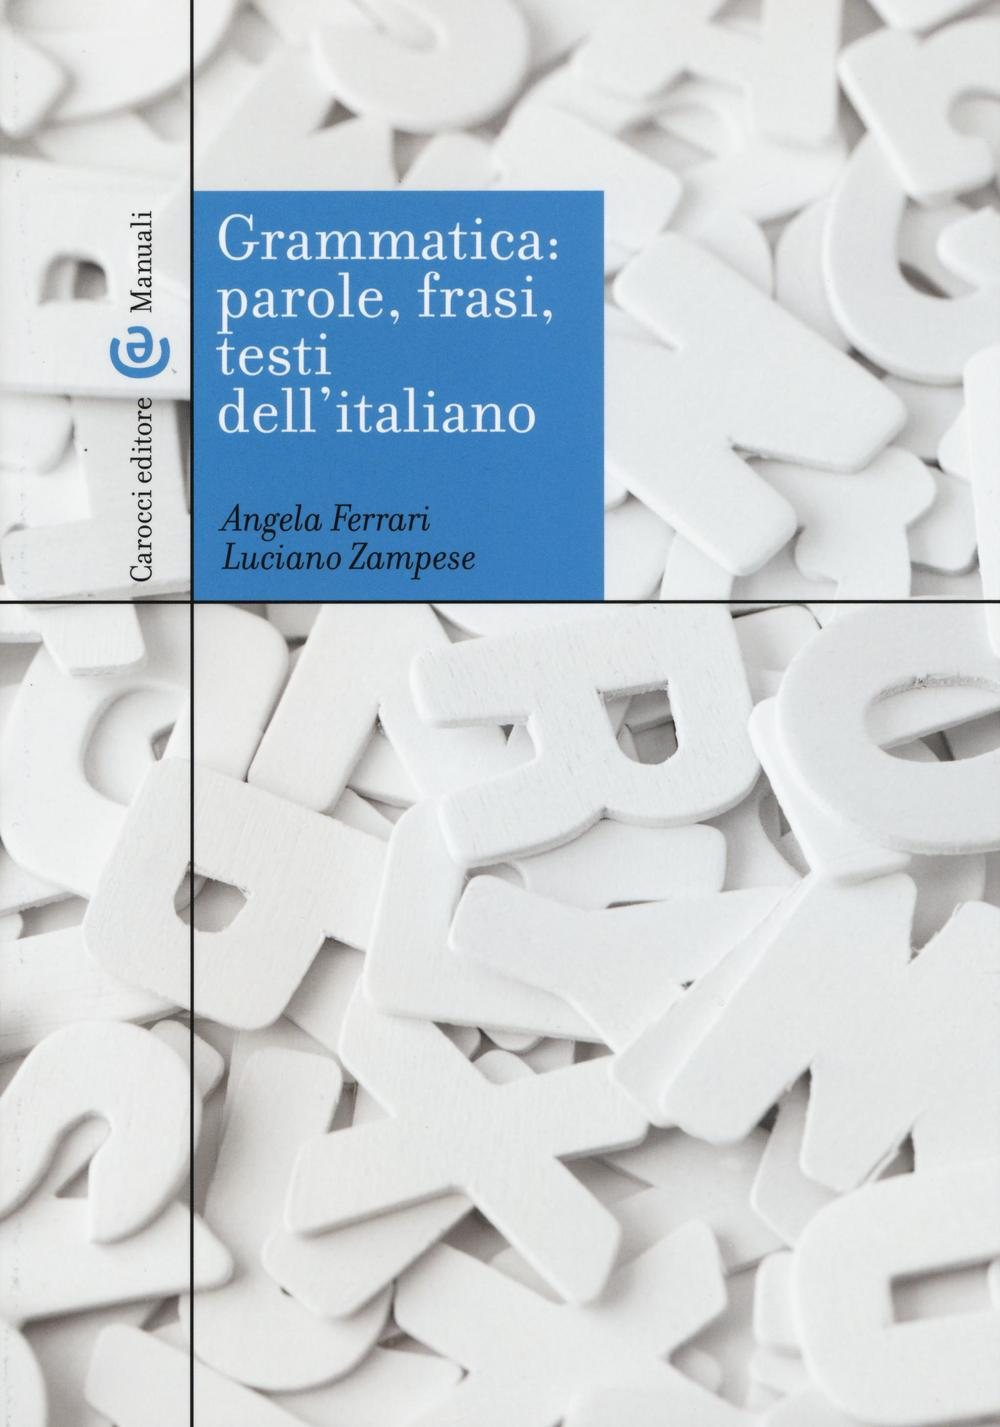 Image of Grammatica: parole, frasi, testi dell'italiano